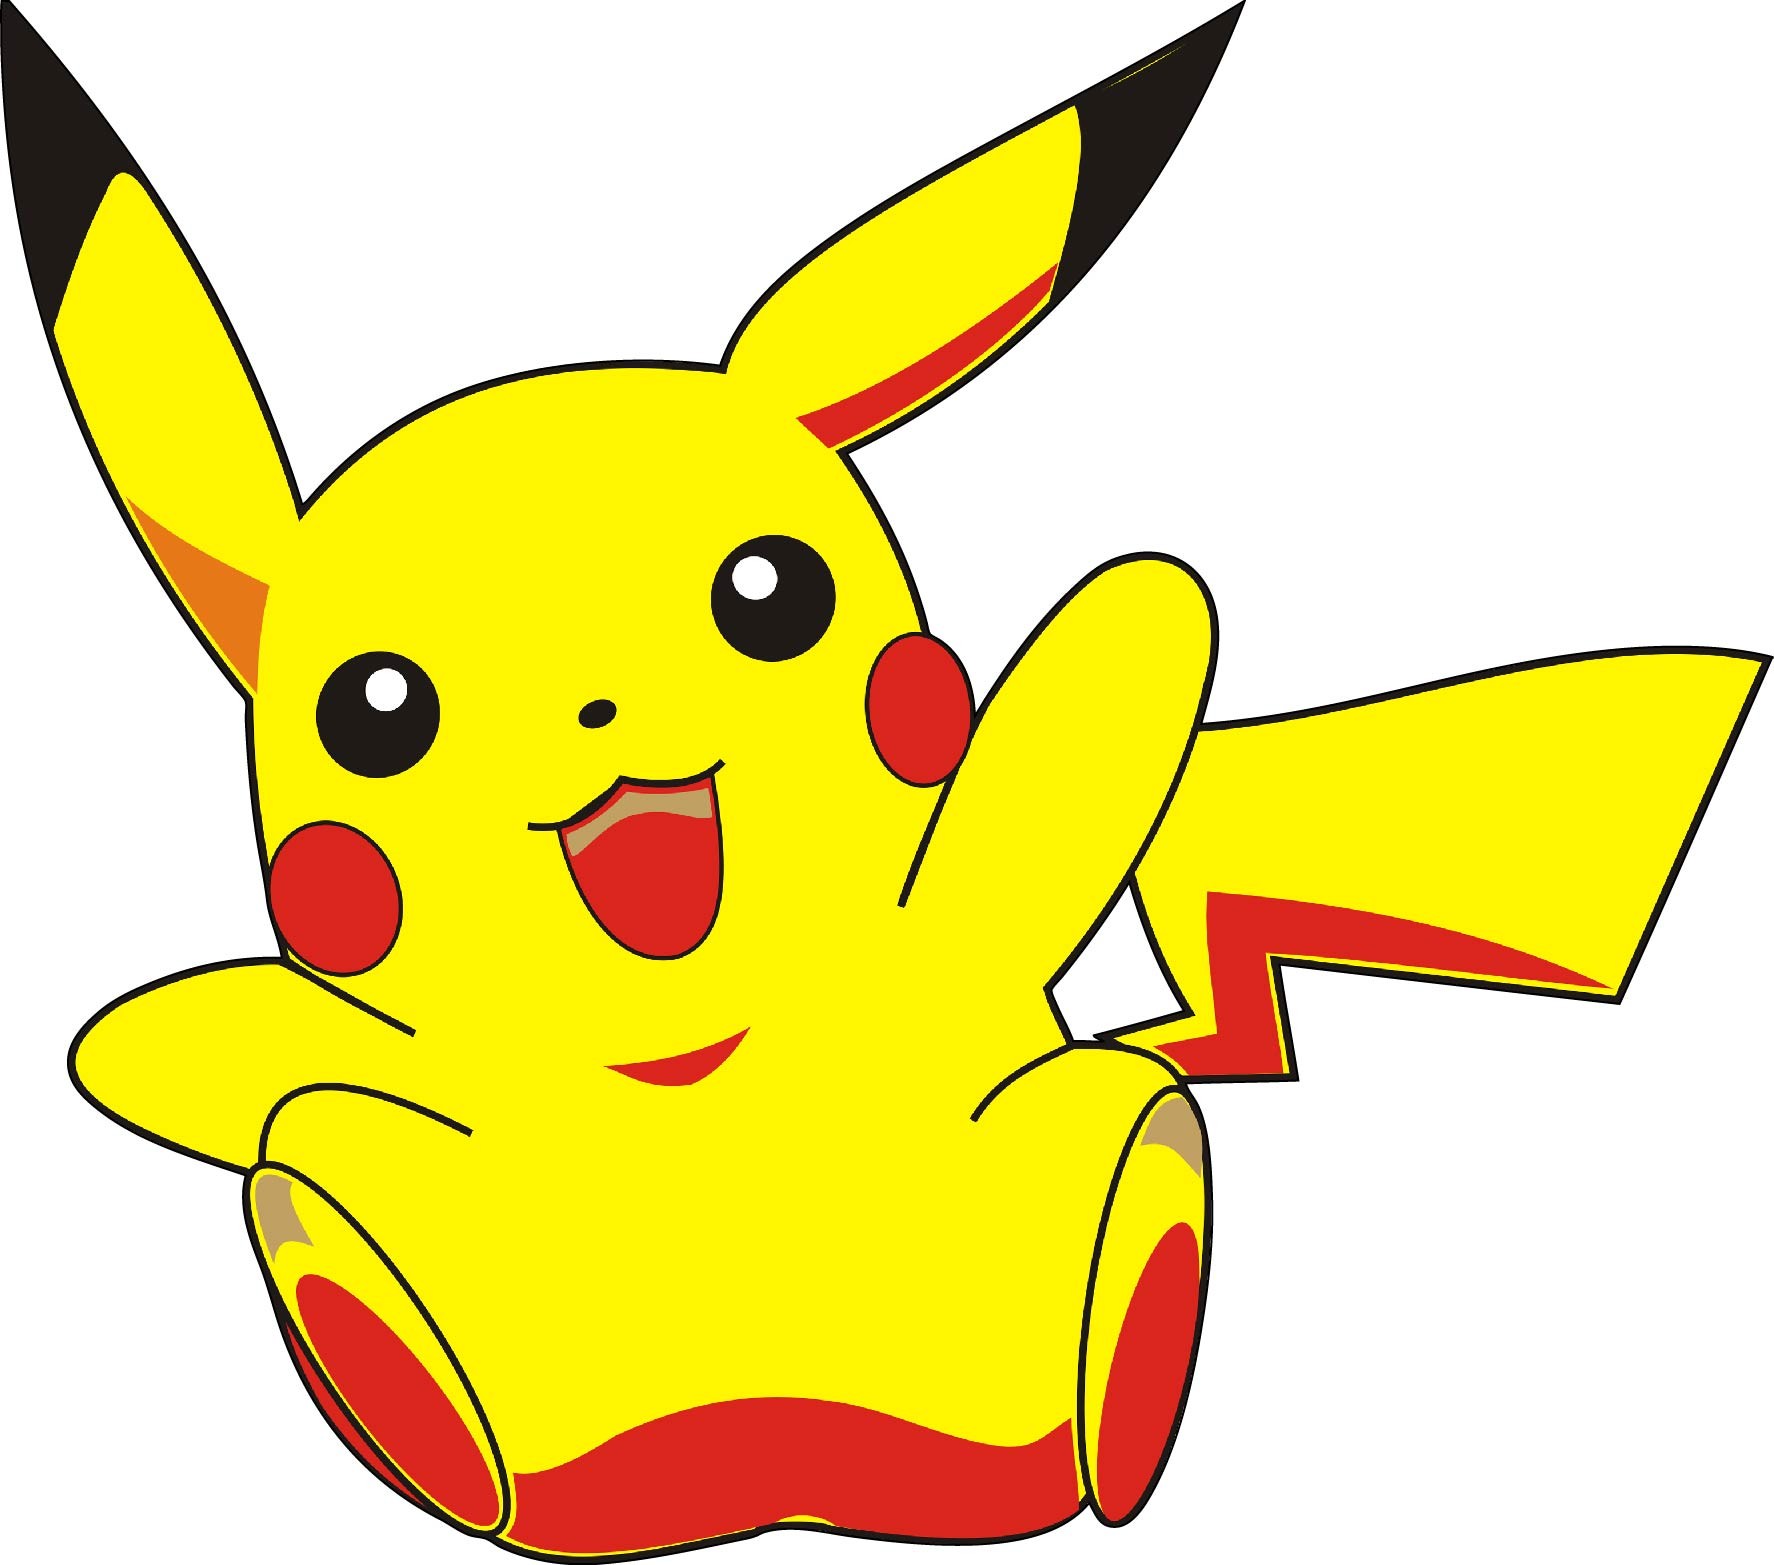 Sticker Autocollant enfant Pikachu 15131